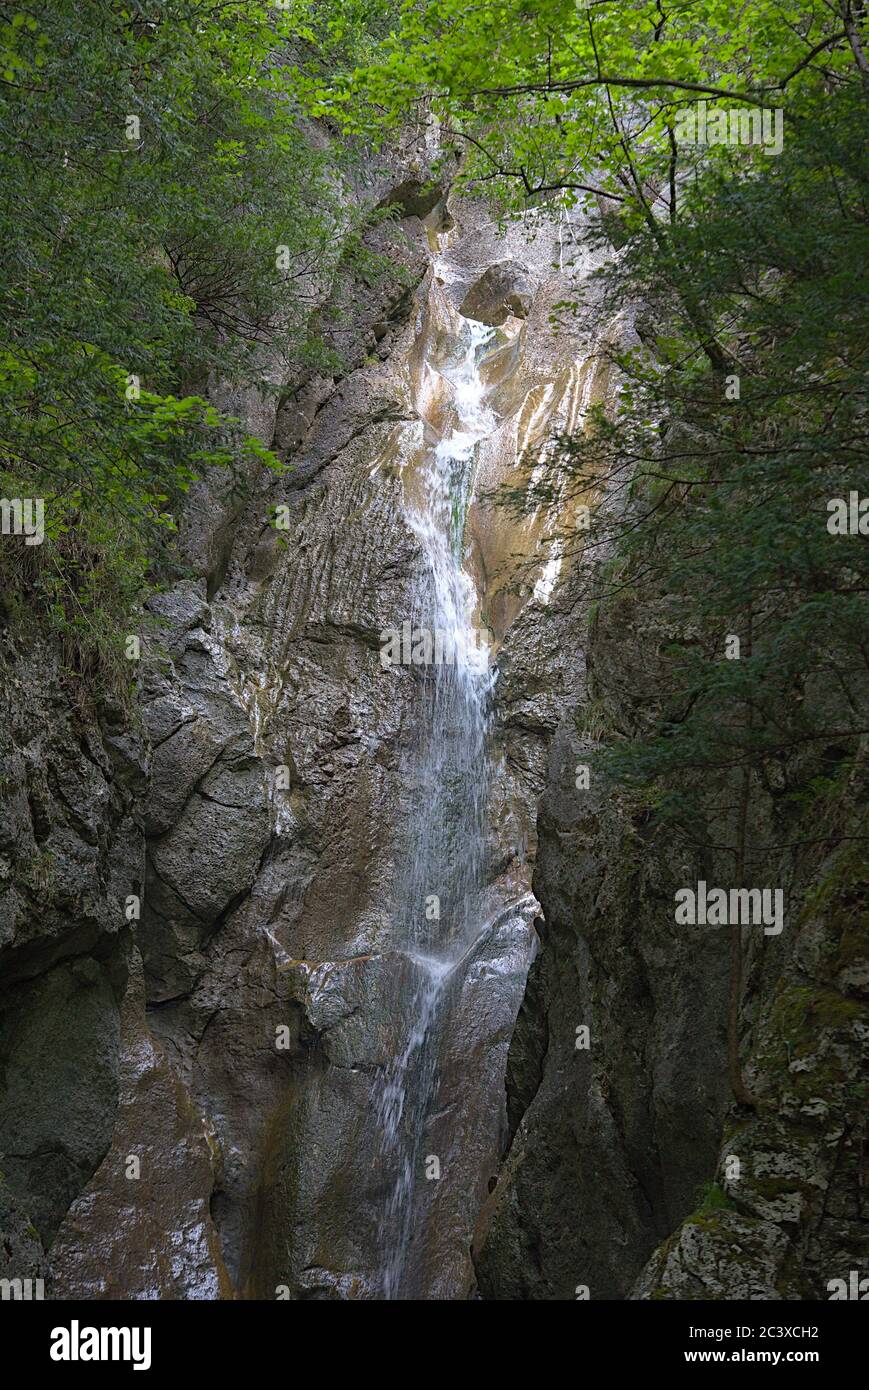 Hohenzoller Wasserfall Foto de stock